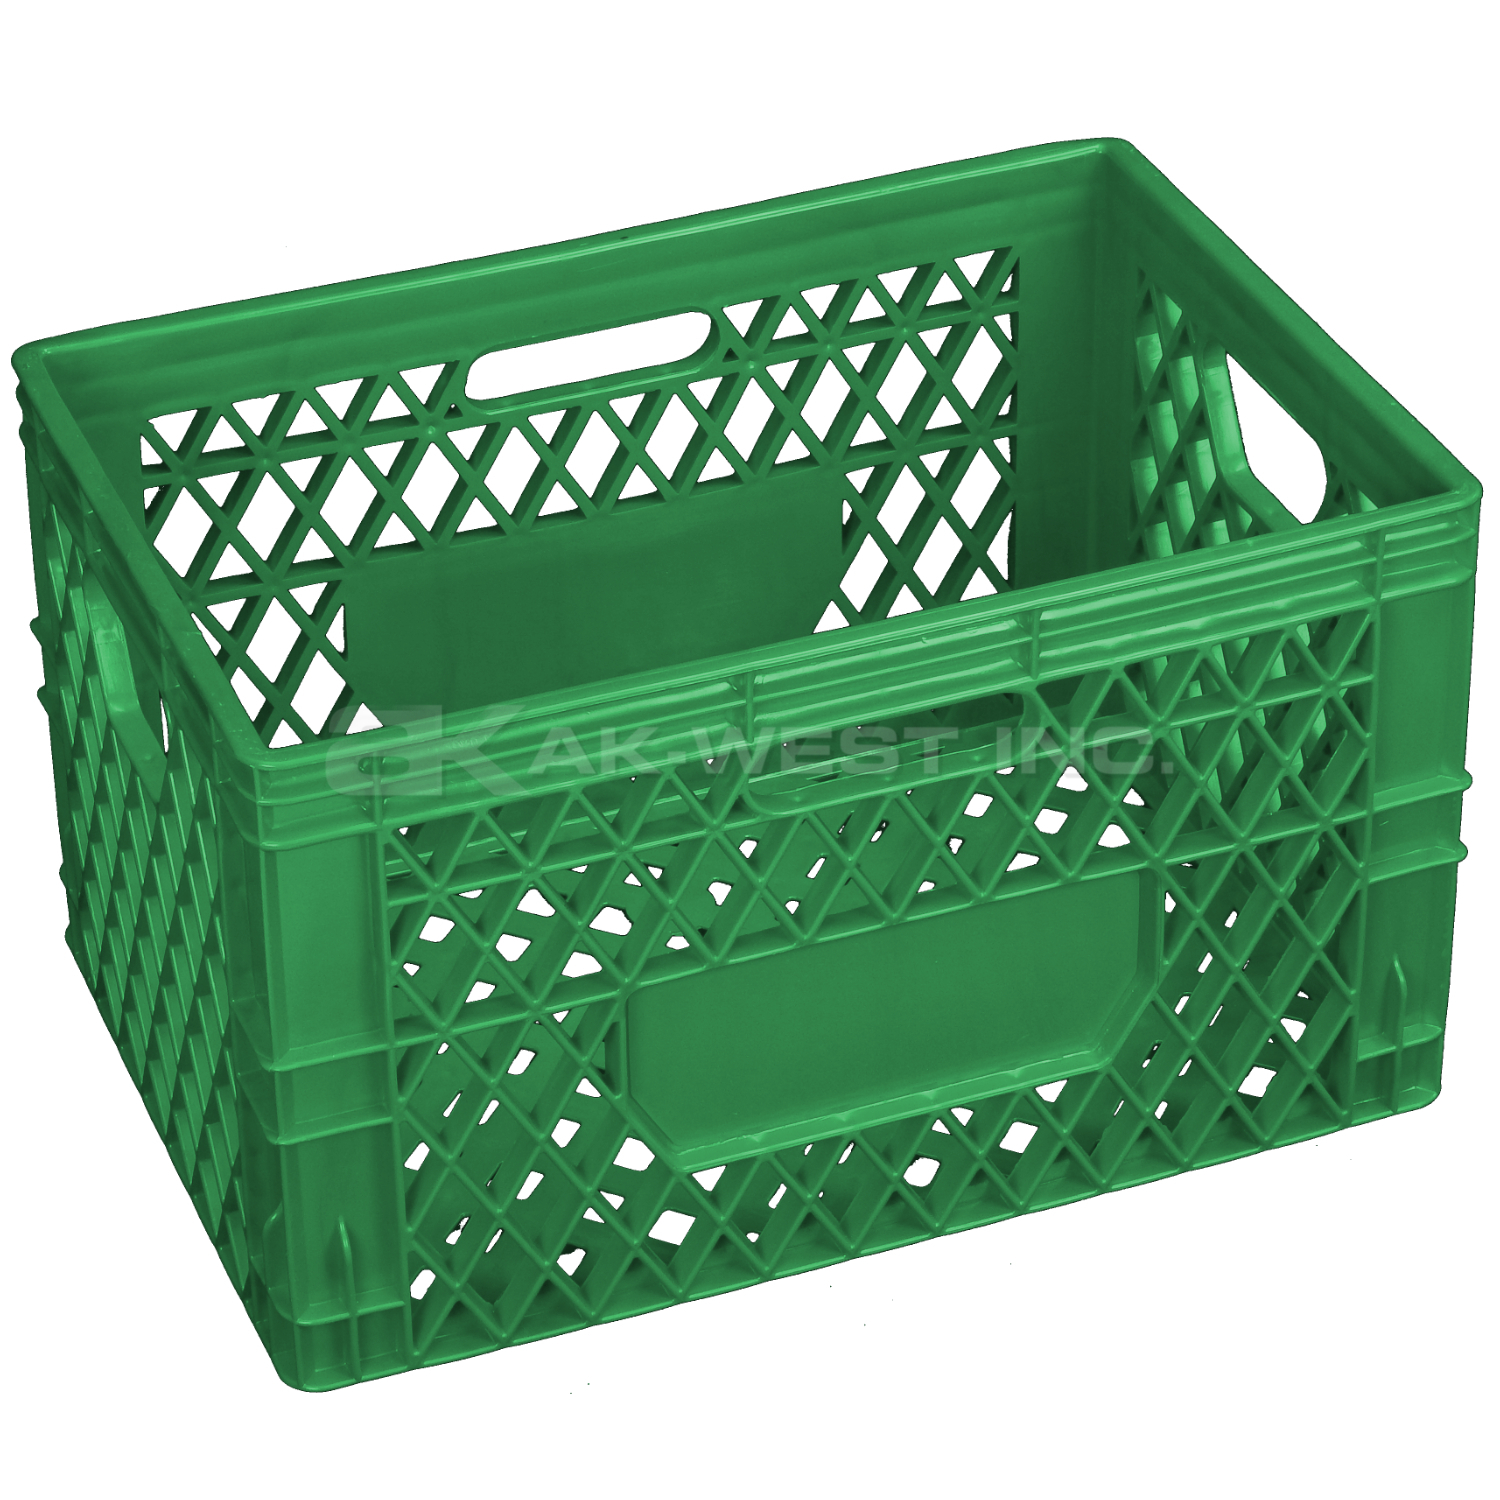 Green, 19"L x 13"W x 11.5"H, 24 Qt Multi-Purpose Crate